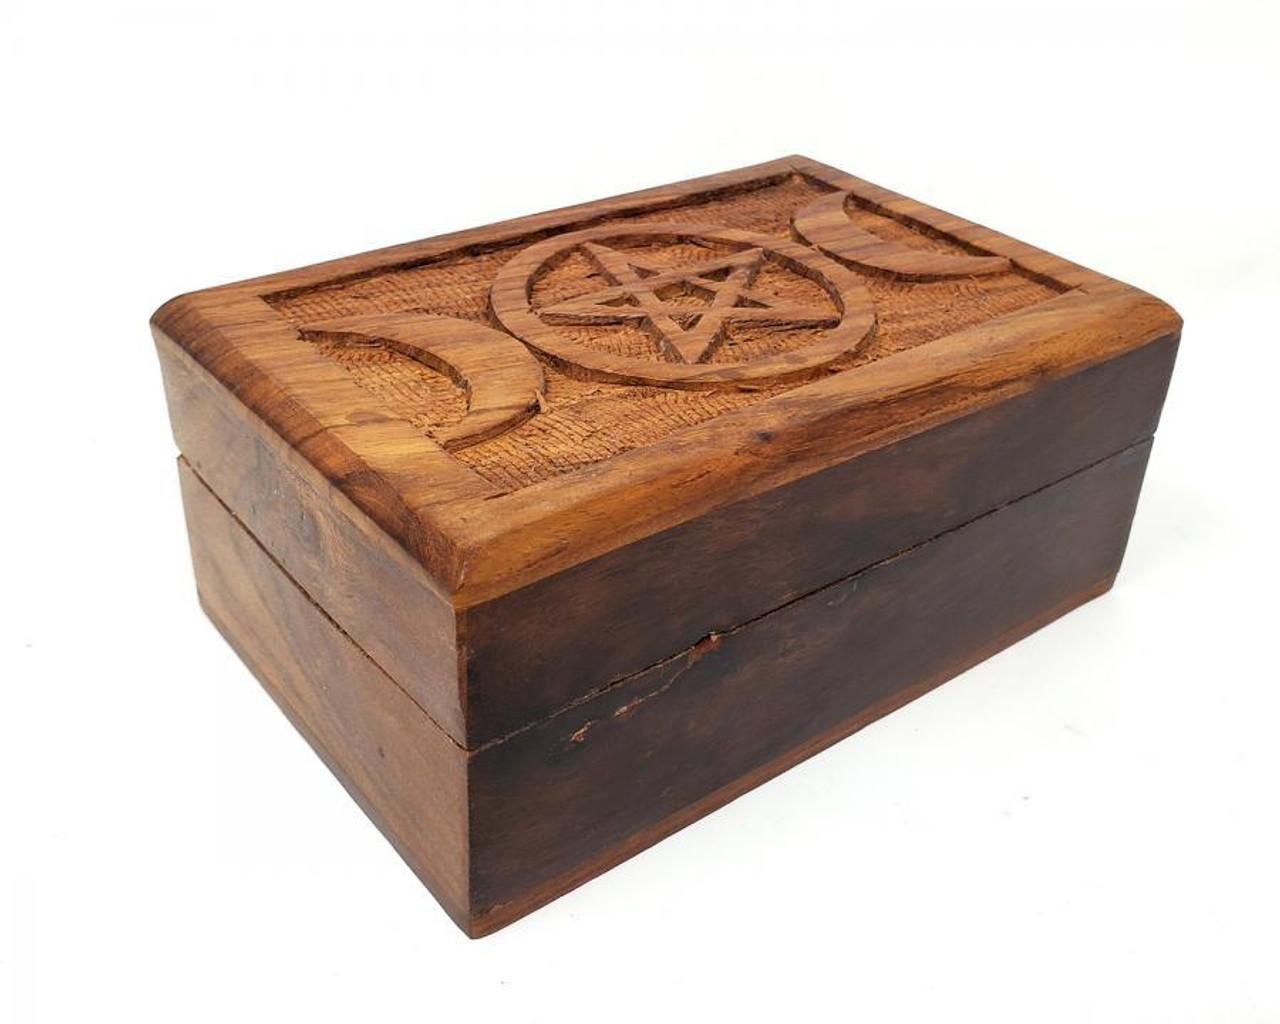 Triple Moon Pentagram Carved Wood Box 4" x 6"